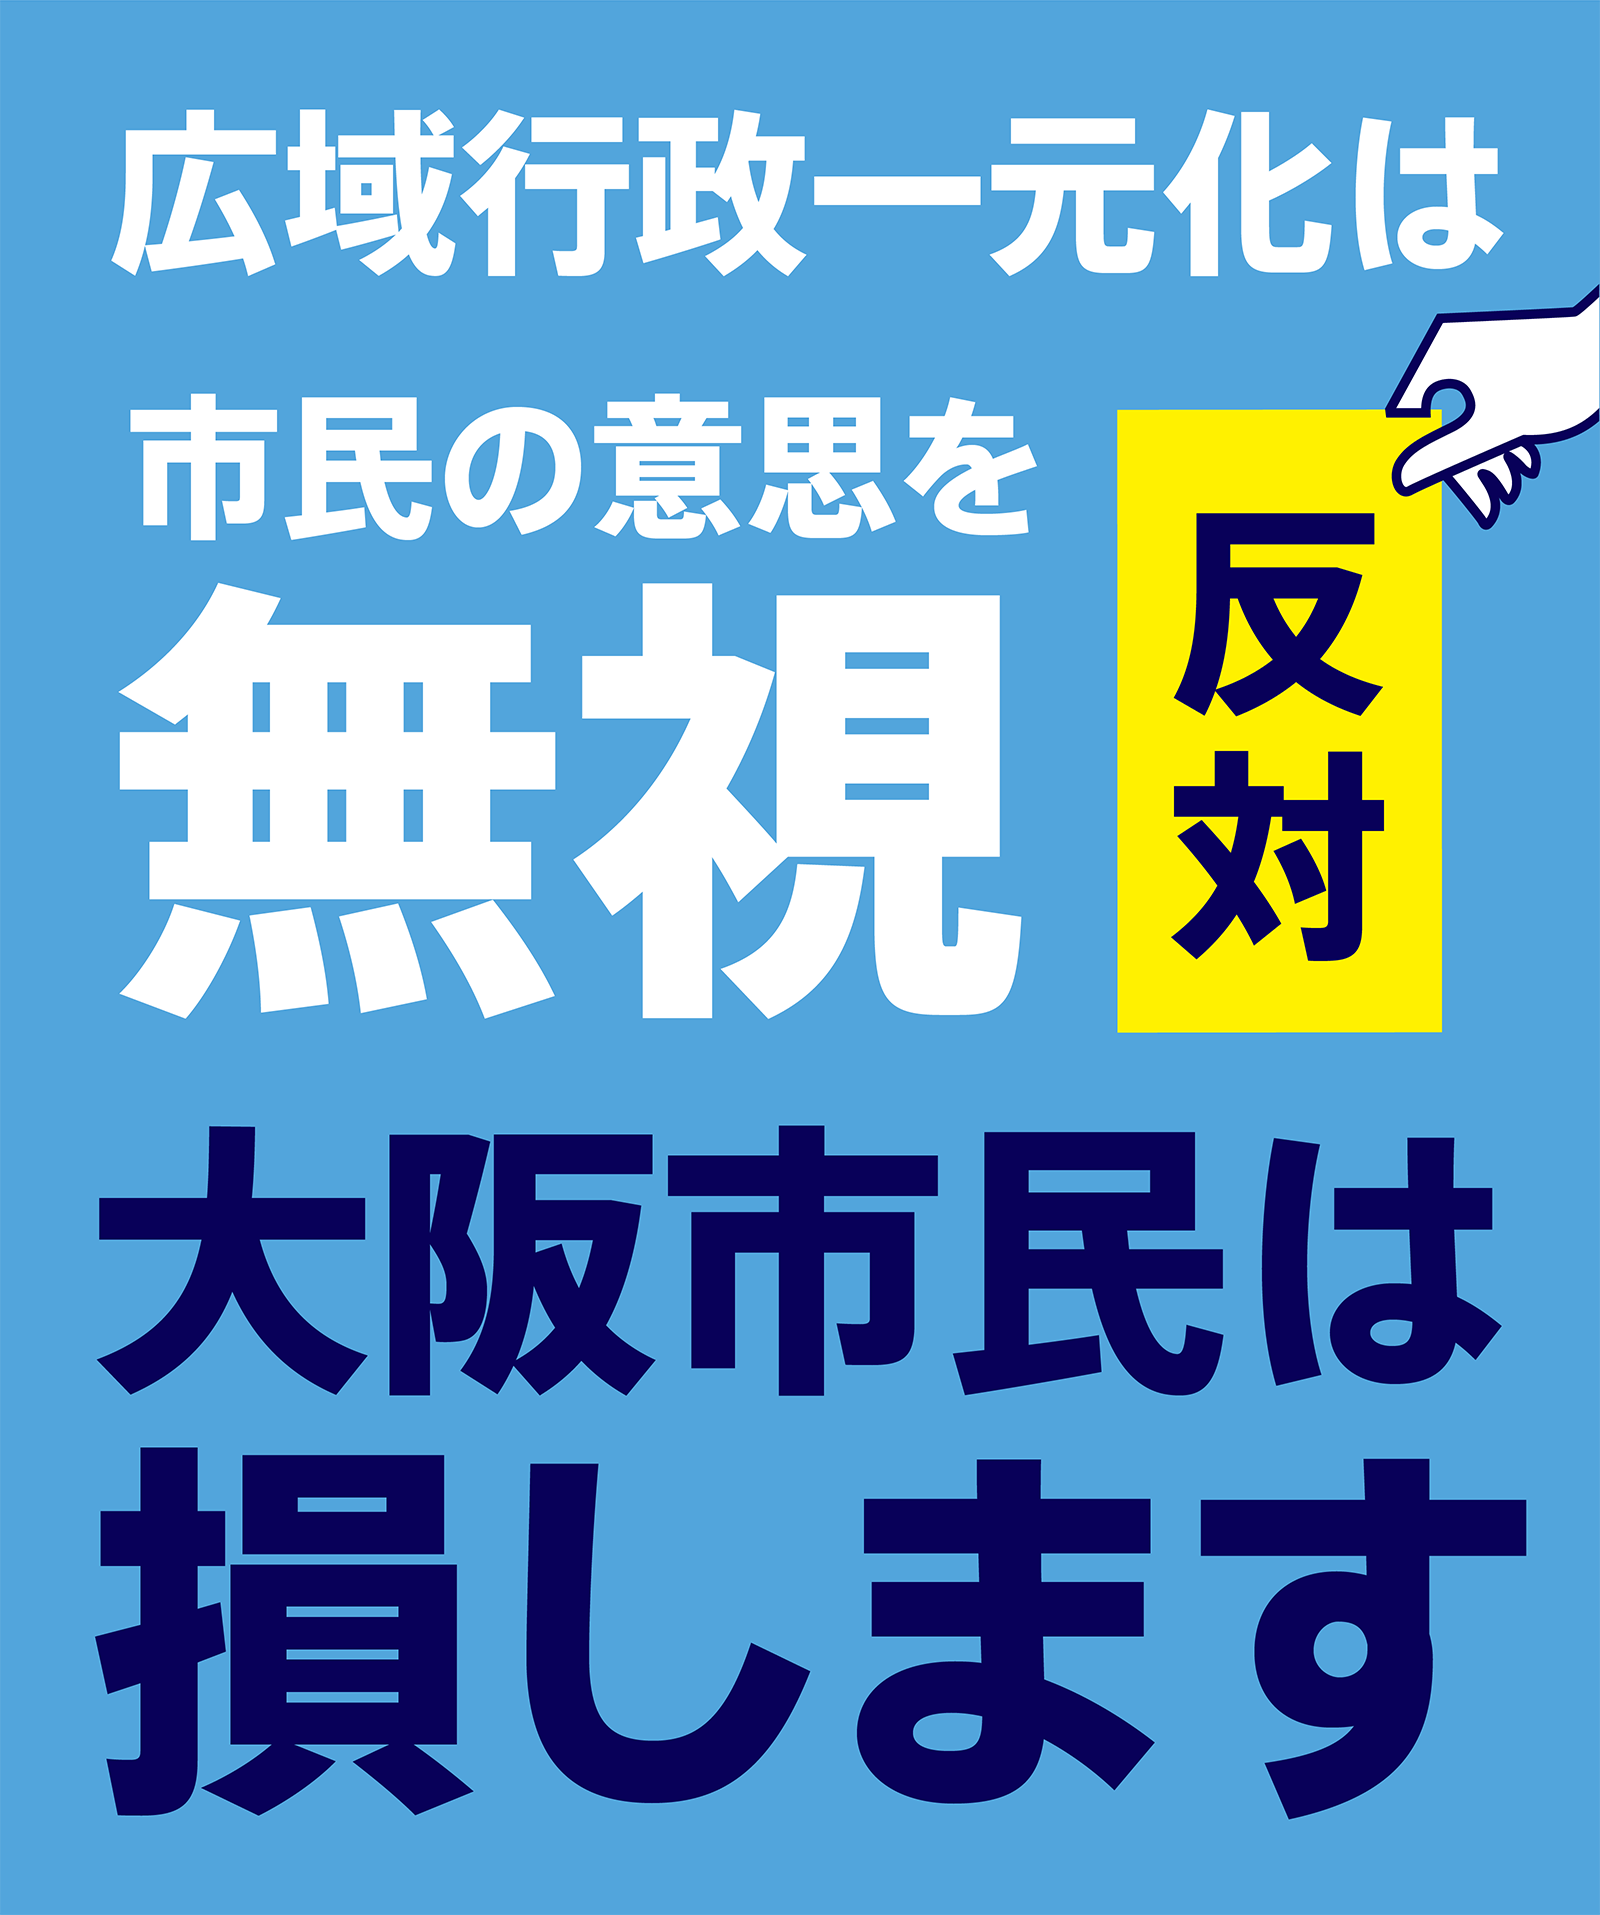 広域行政一元化は市民の意思を無視します。大阪市民は損をします。